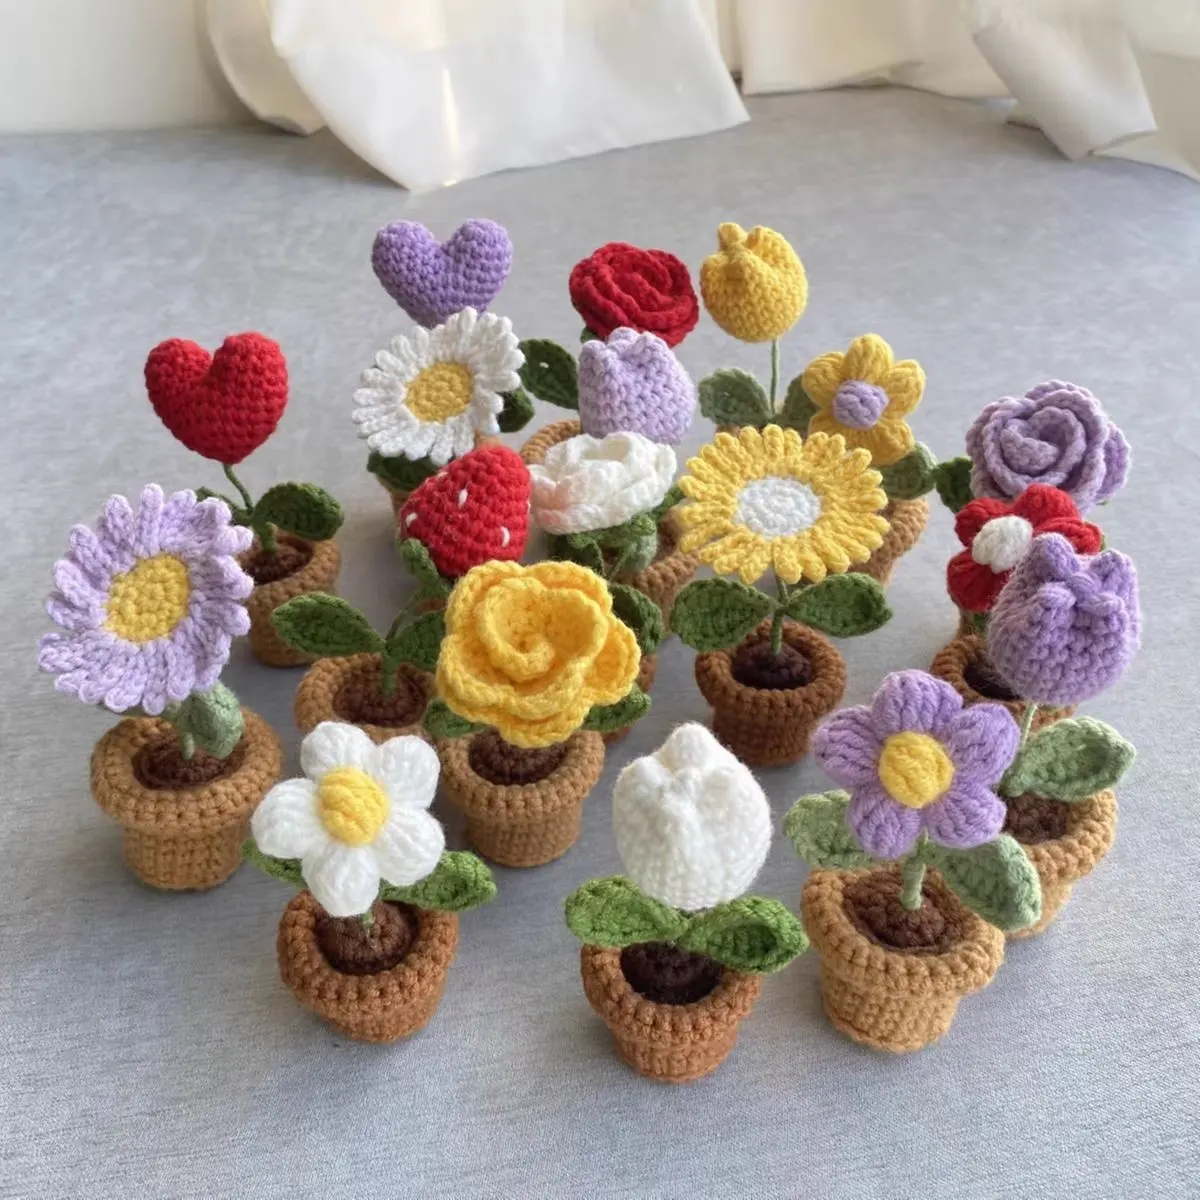 Handmade Crochet Sunflower Tulip Rose Flower Potting Knitting Flower Knit Potted Flower Novelty Christmas Valentines Gifts